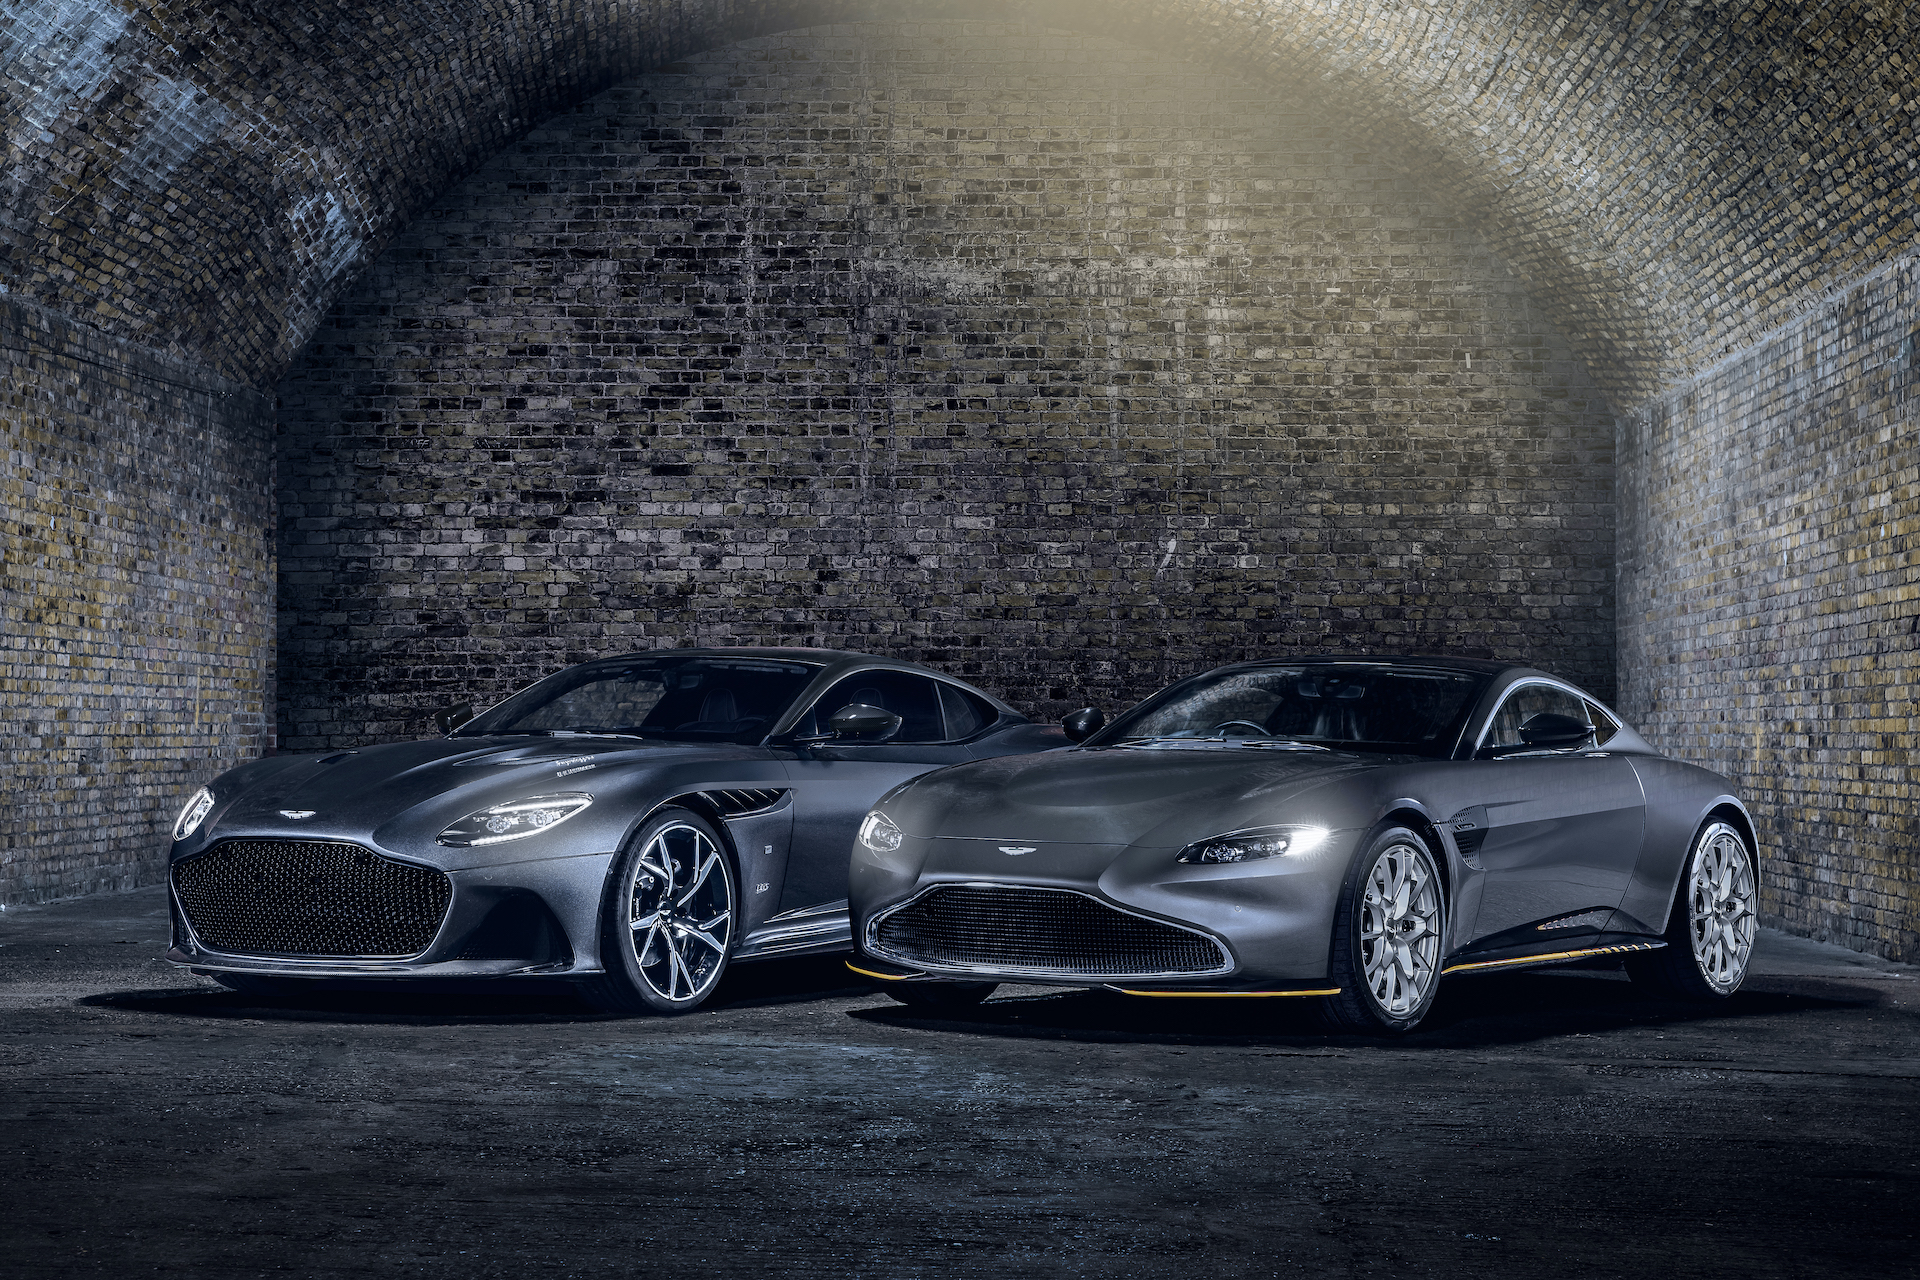 Aston Martin Vantage and DBS Superleggera 007 Limited Edition parked in an underground garage